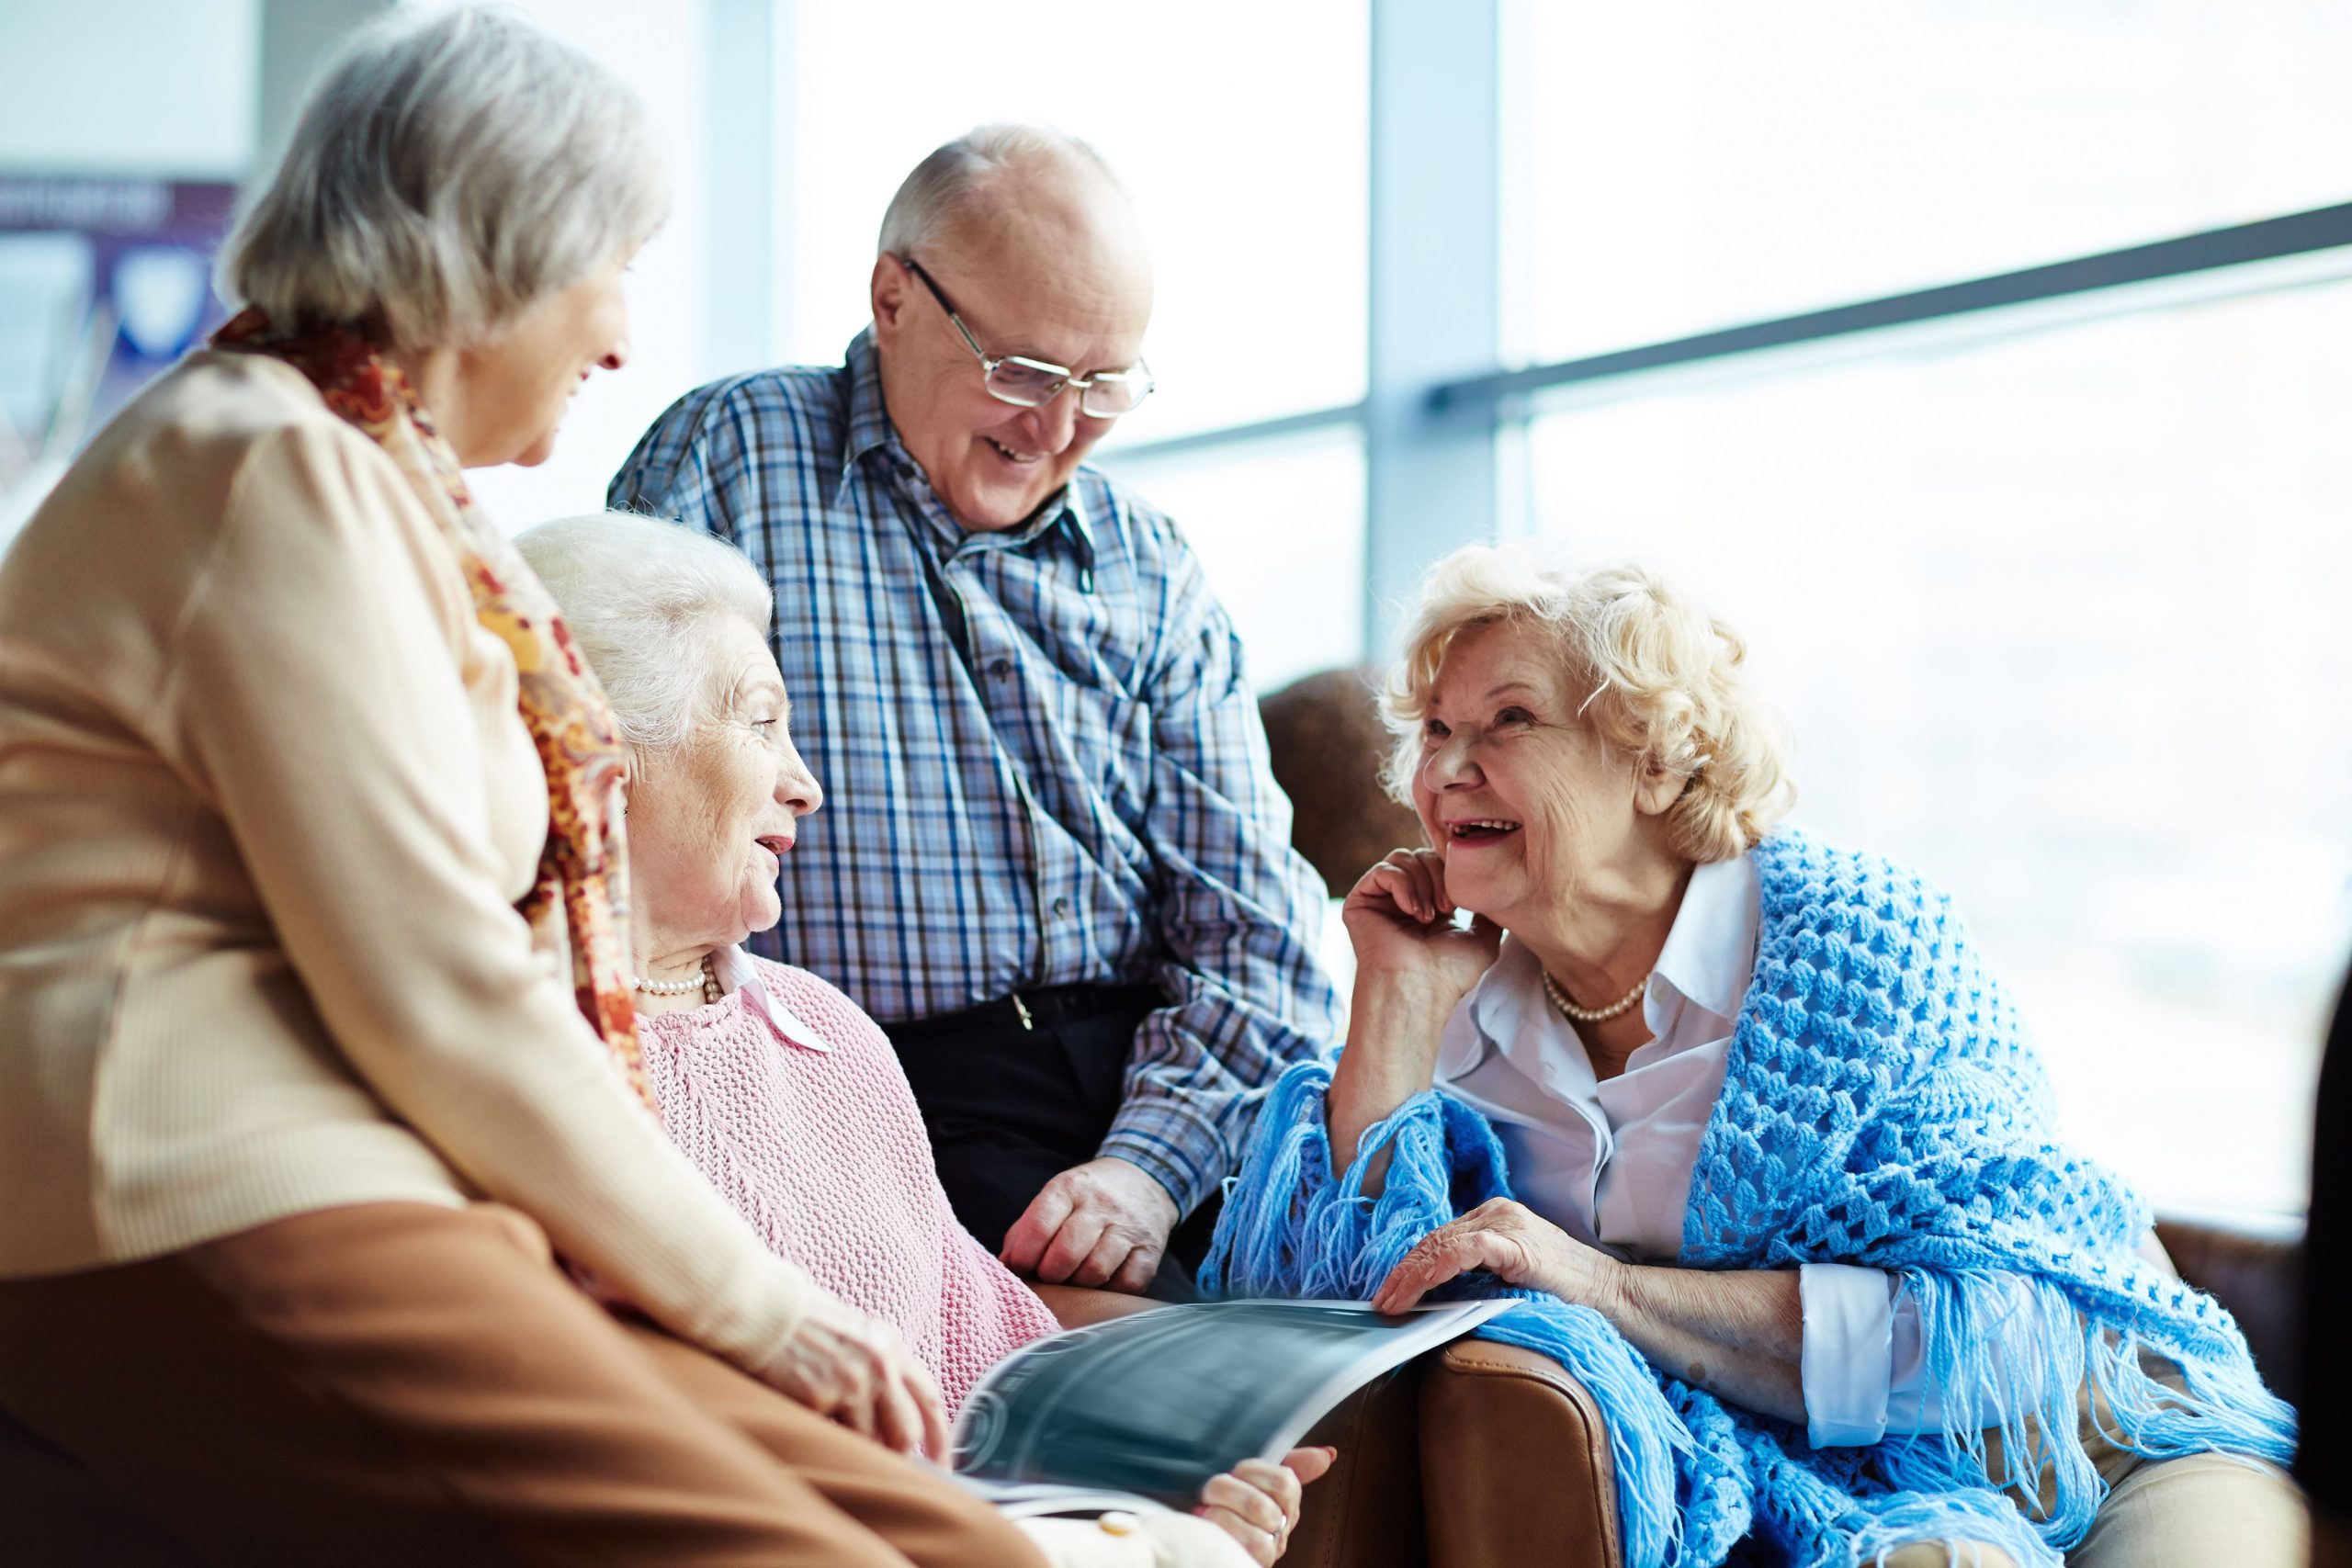 Если вы подыскиваете для своего пожилого родственника дом престарелых в Саратовской области, обратите внимание на дом-интернат для престарелых и инвалидов "Долгожители" в Дубках. Мы специализируемся на уходе за пожилыми людьми, за пенсионерами с тяжелыми заболеваниями, лежачими больными, онкобольными, за людьми, перенесшими инсульт и инфаркт. Наша задача — оказать помощь старику, которую ему не могут обеспечить дети, в силу разных причин: нет времени, не хватает опыта и т.д. Пансионат для пожилых людей с деменцией Пансионат для престарелых в Дубках оказывает помощь людям с психическими расстройствами: деменция, старческое слабоумие, болезнь Альцгеймера, невроз, депрессия. Рядом с такими пациентами всегда кто-то должен находиться. Сиделки частного пансионата для пожилых людей "Долгожители" в Дубках помогают своим подопечным во всем: кормят, помогают одеться, поесть, следят за своевременным приемом лекарств и пищи, сопровождают на прогулке. Чтобы пожилые люди быстро адаптировались на новом месте, с ними общаются сестры милосердия. А если болезнь прогрессирует, мы приглашаем специалистов из медицинского центра, с которым сотрудничаем на постоянной основе. Уход за пожилыми в домах престарелых В частный дом престарелых в Дубках зачастую обращаются родственники стариков из-за того, что хотят обеспечить своим родным должный уход, комфорт и общение. Бывает, что старики без тяжелых заболеваний, увядают на глазах. Все это происходит из-за недостатка общения и одиночества. А родственники не знают, чем занять пожилого человека дома, чтобы ему было не так тоскливо. Новую, интересную и беззаботную жизнь предоставит наш пансионат для пожилых людей в Дубках. Мы обеспечим вашему пожилому родственнику: -	Должный уход. -	Уважительное отношение. -	Проконтролируем прием препаратов. -	Сбалансированное многоразовое питание. -	Стирка и глажка одежды. -	Смена постельного белья 1 раз в сутки. -	Стрижка волос и ногтей. -	Выезды на экскурсии. -	Развлекательная программа. -	Общение. -	Комфортные условия проживания. -	Интересную и беззаботную